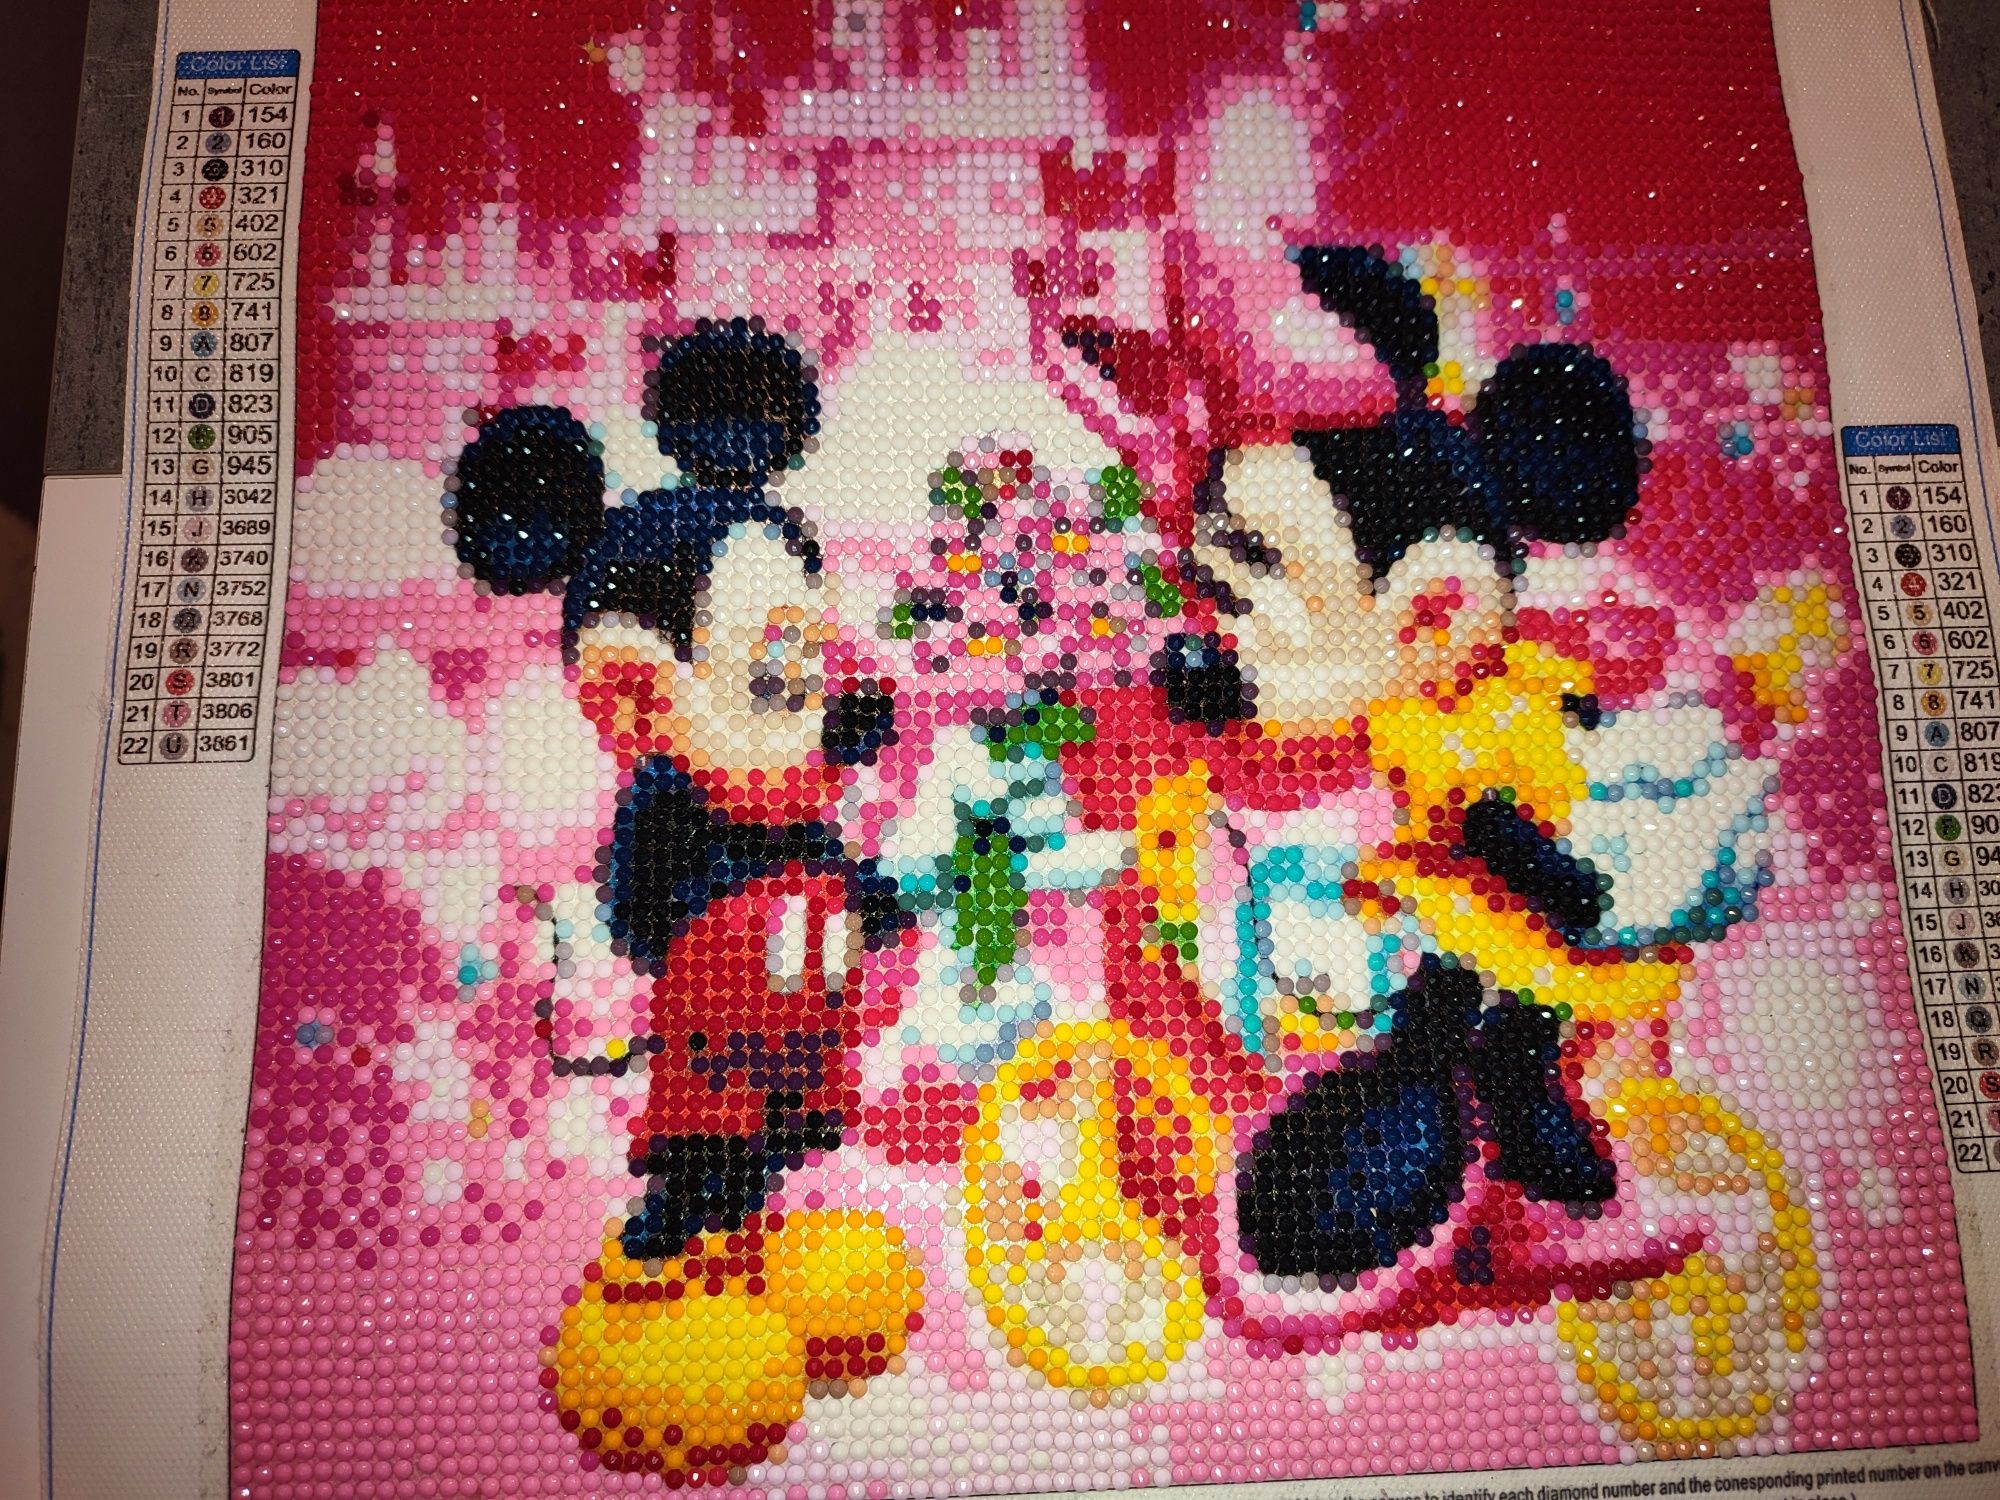 Diamond painting gotowy obrazak Miki Mouse 30x30